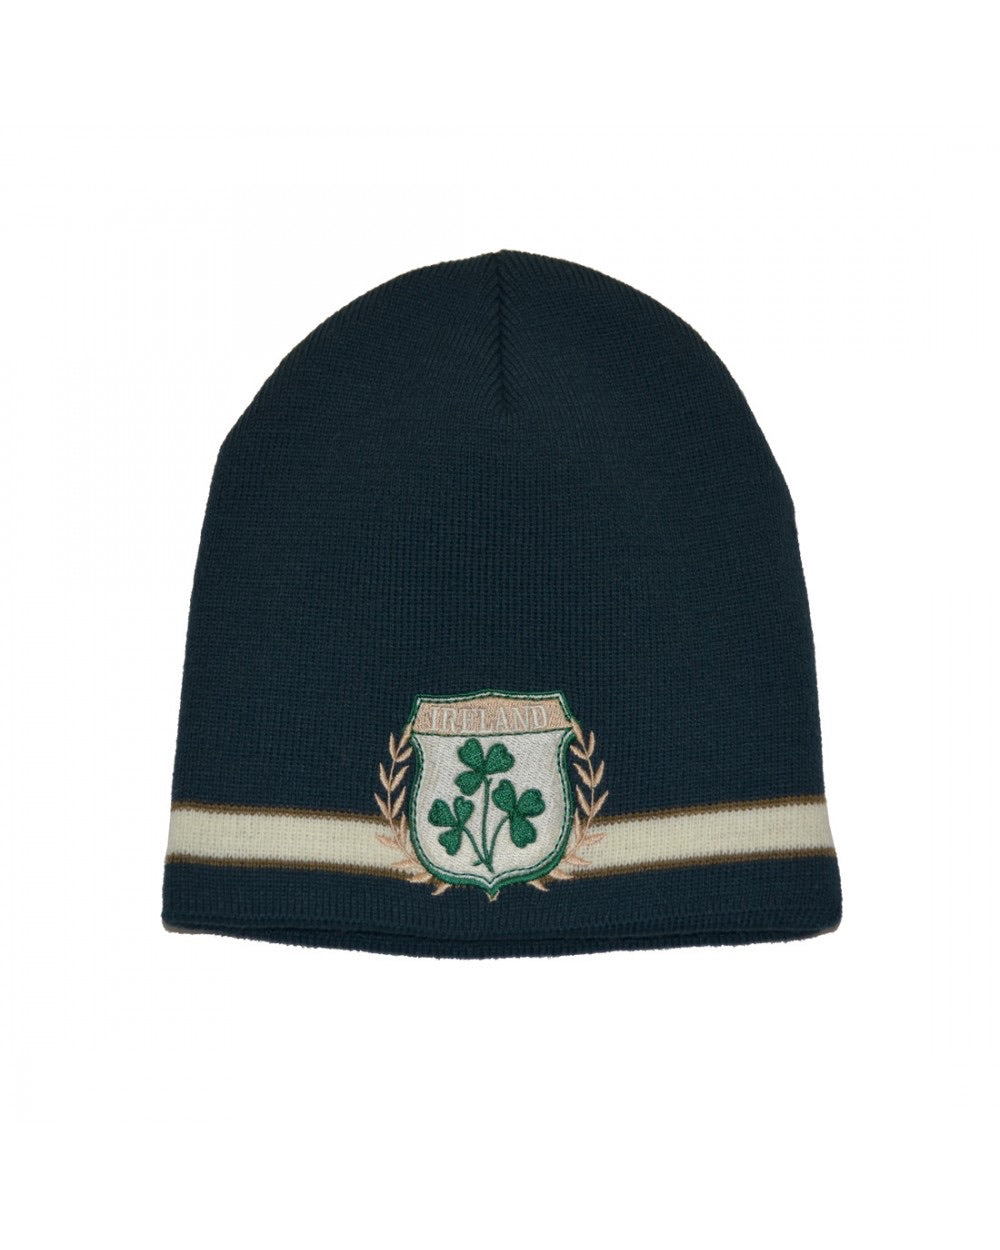 Ireland shamrock crest hat R6119